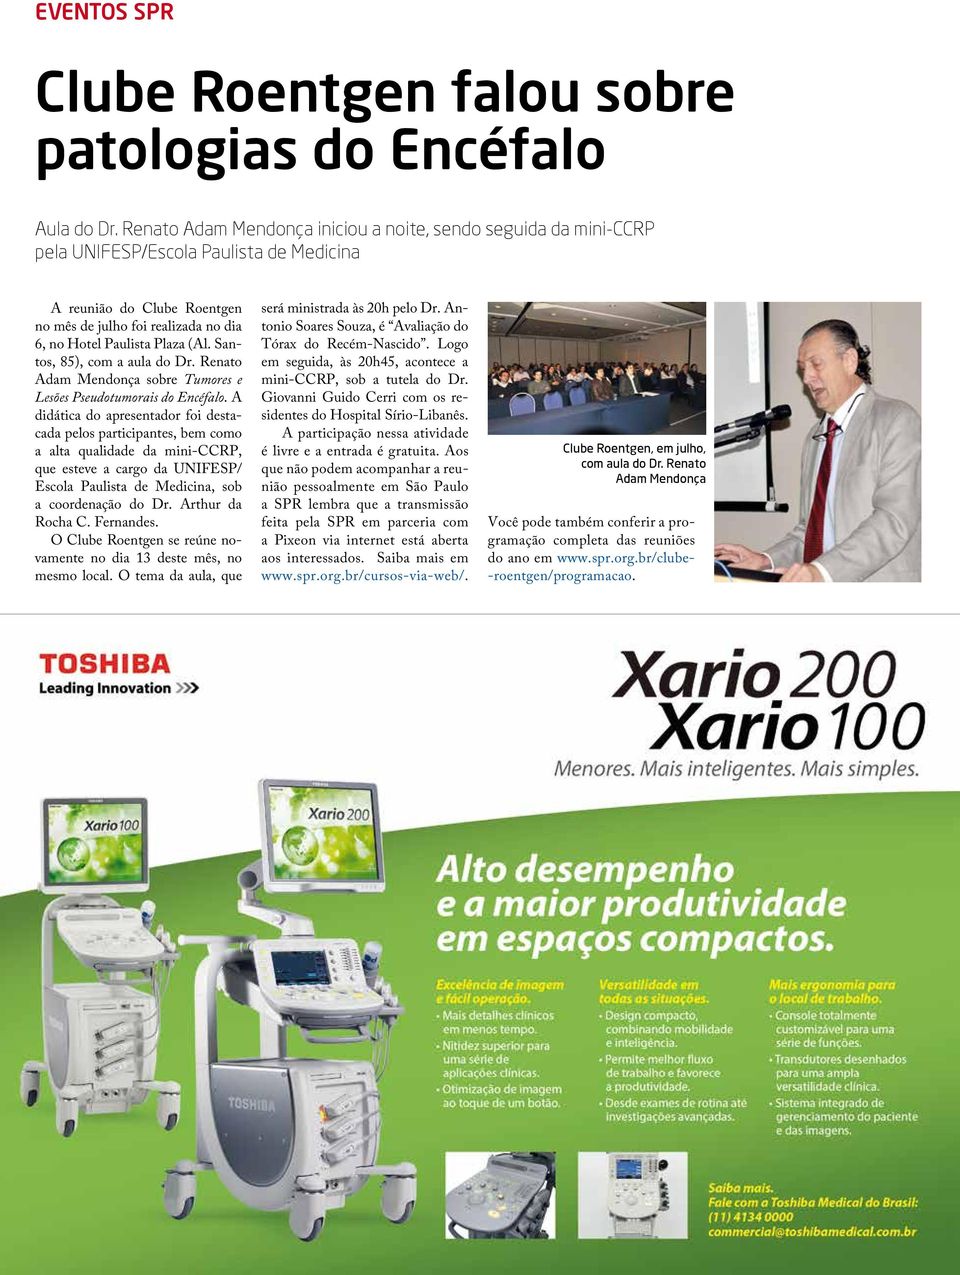 (Al. Santos, 85), com a aula do Dr. Renato Adam Mendonça sobre Tumores e Lesões Pseudotumorais do Encéfalo.